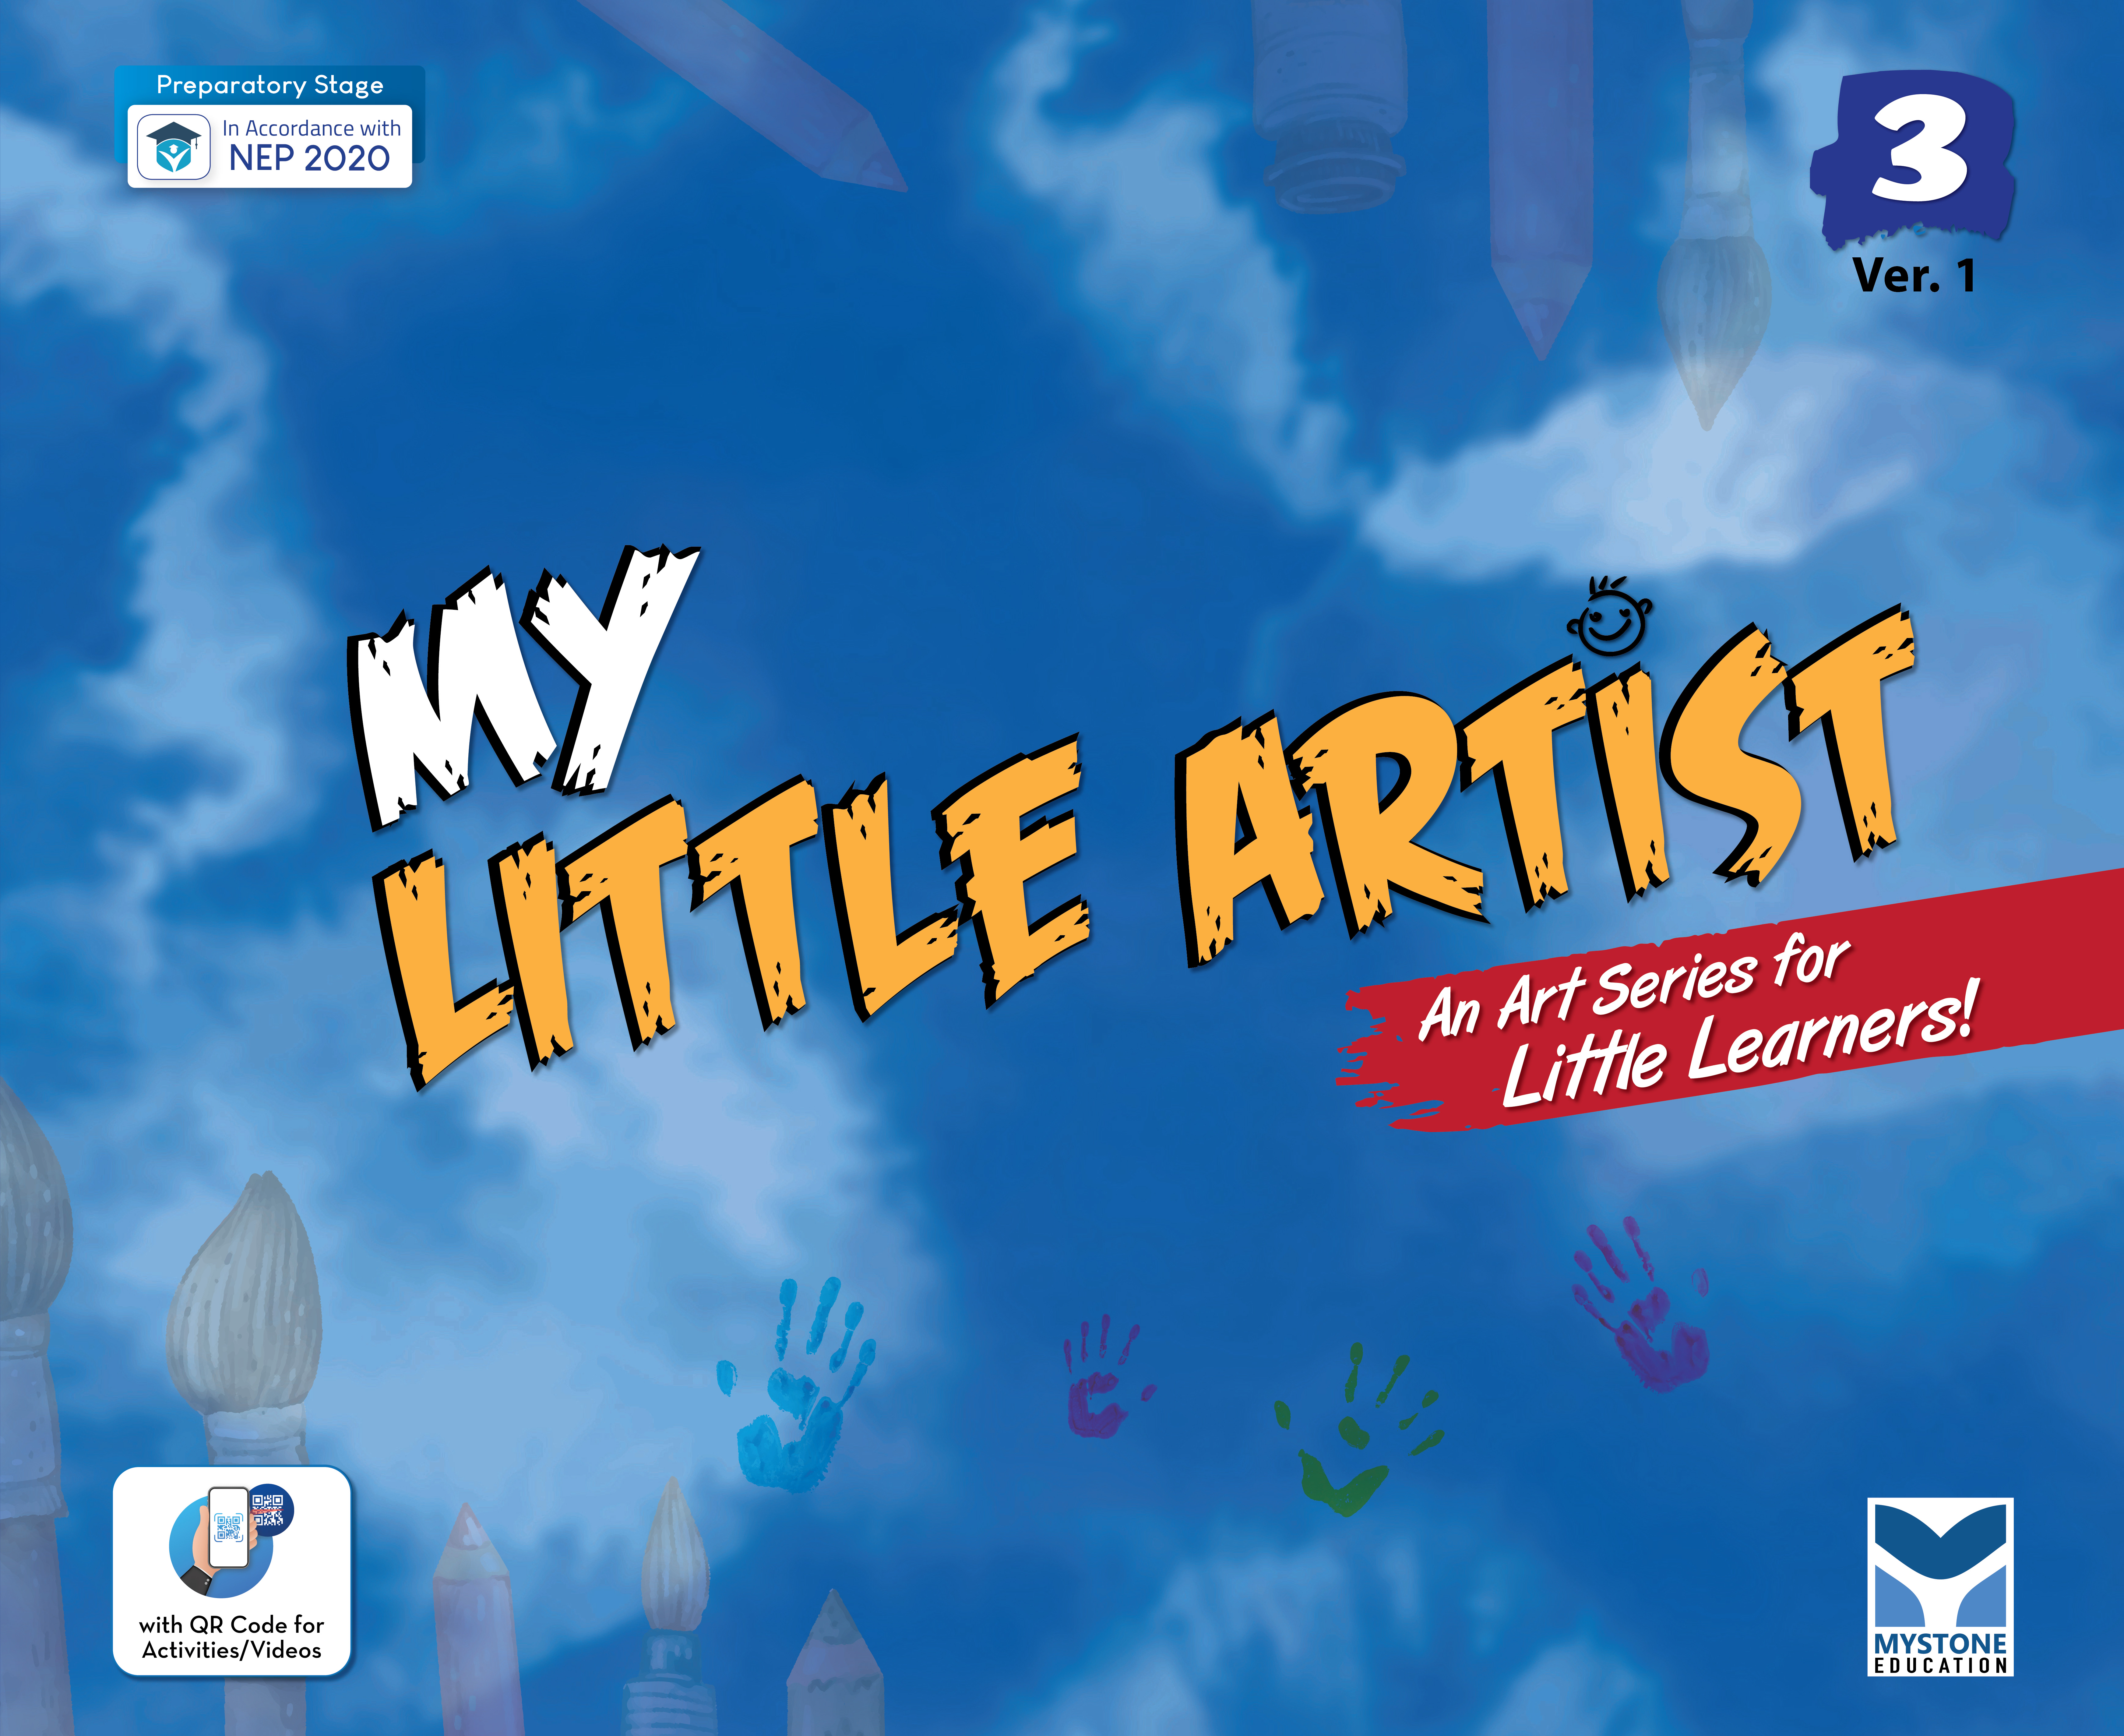 My Little Artist  Ver. 1 (An Art Series for Little Learners) Class 3